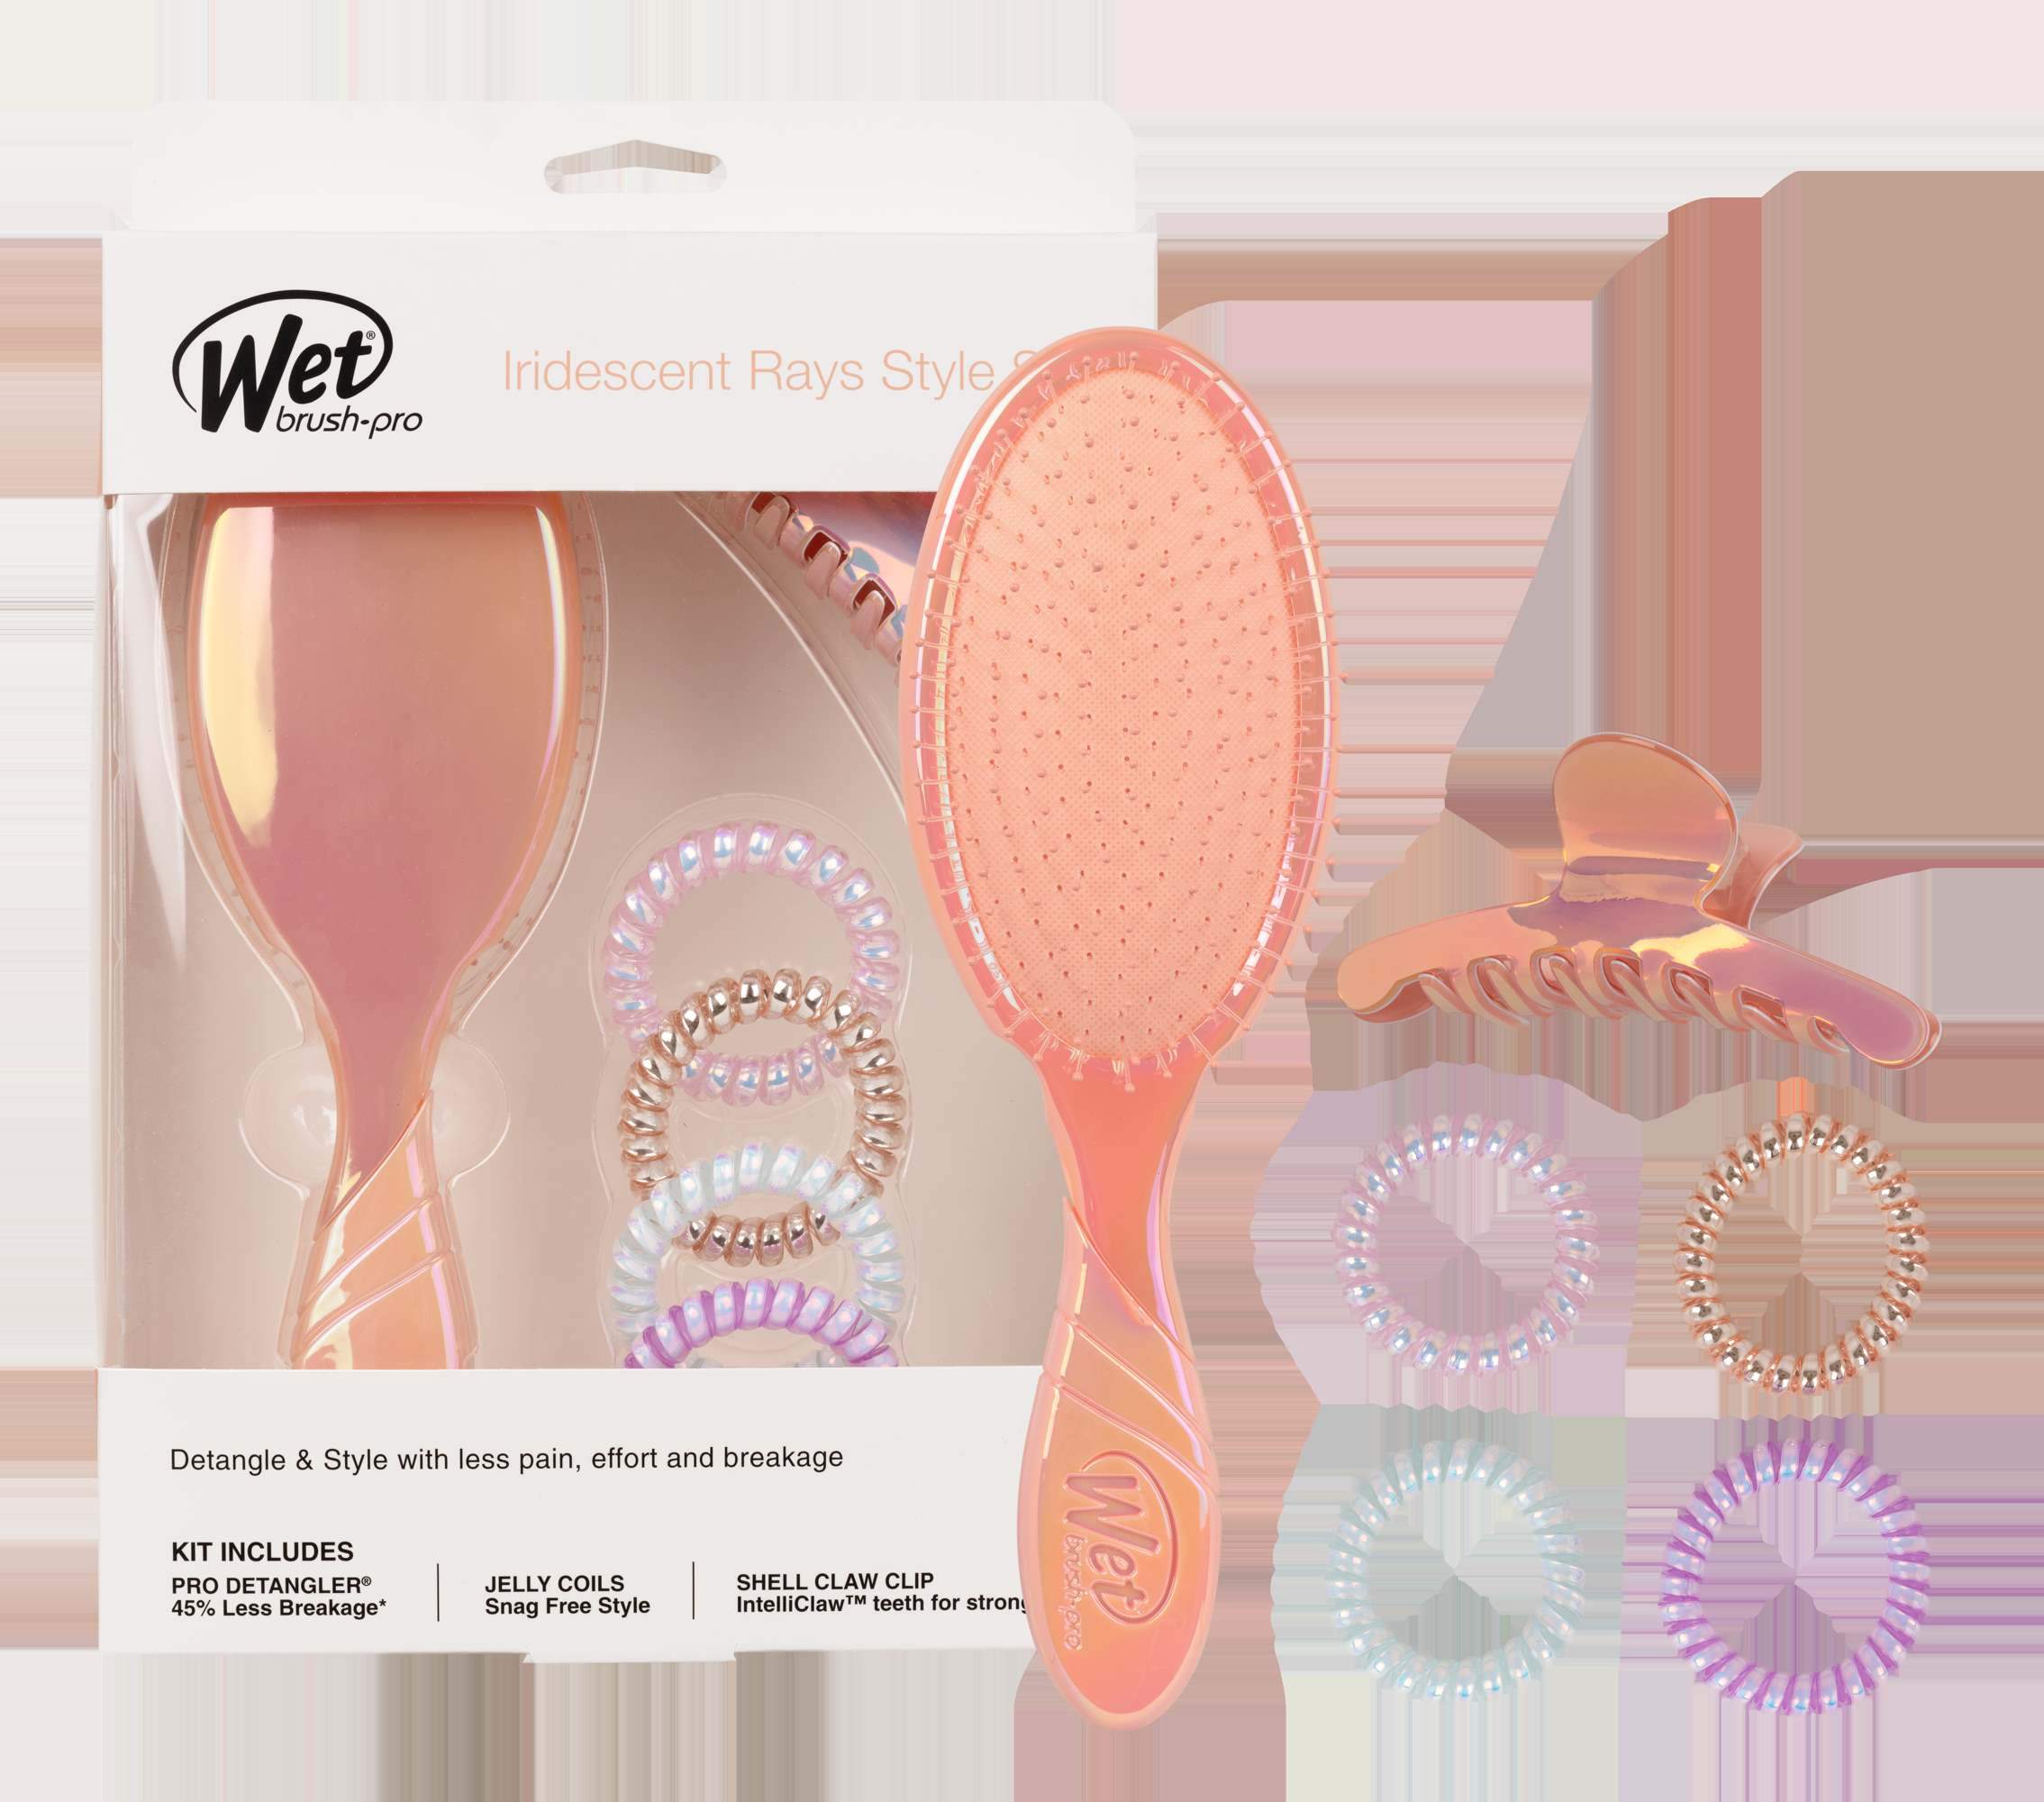 Wet Brush Gift Set - Irridecent Rays